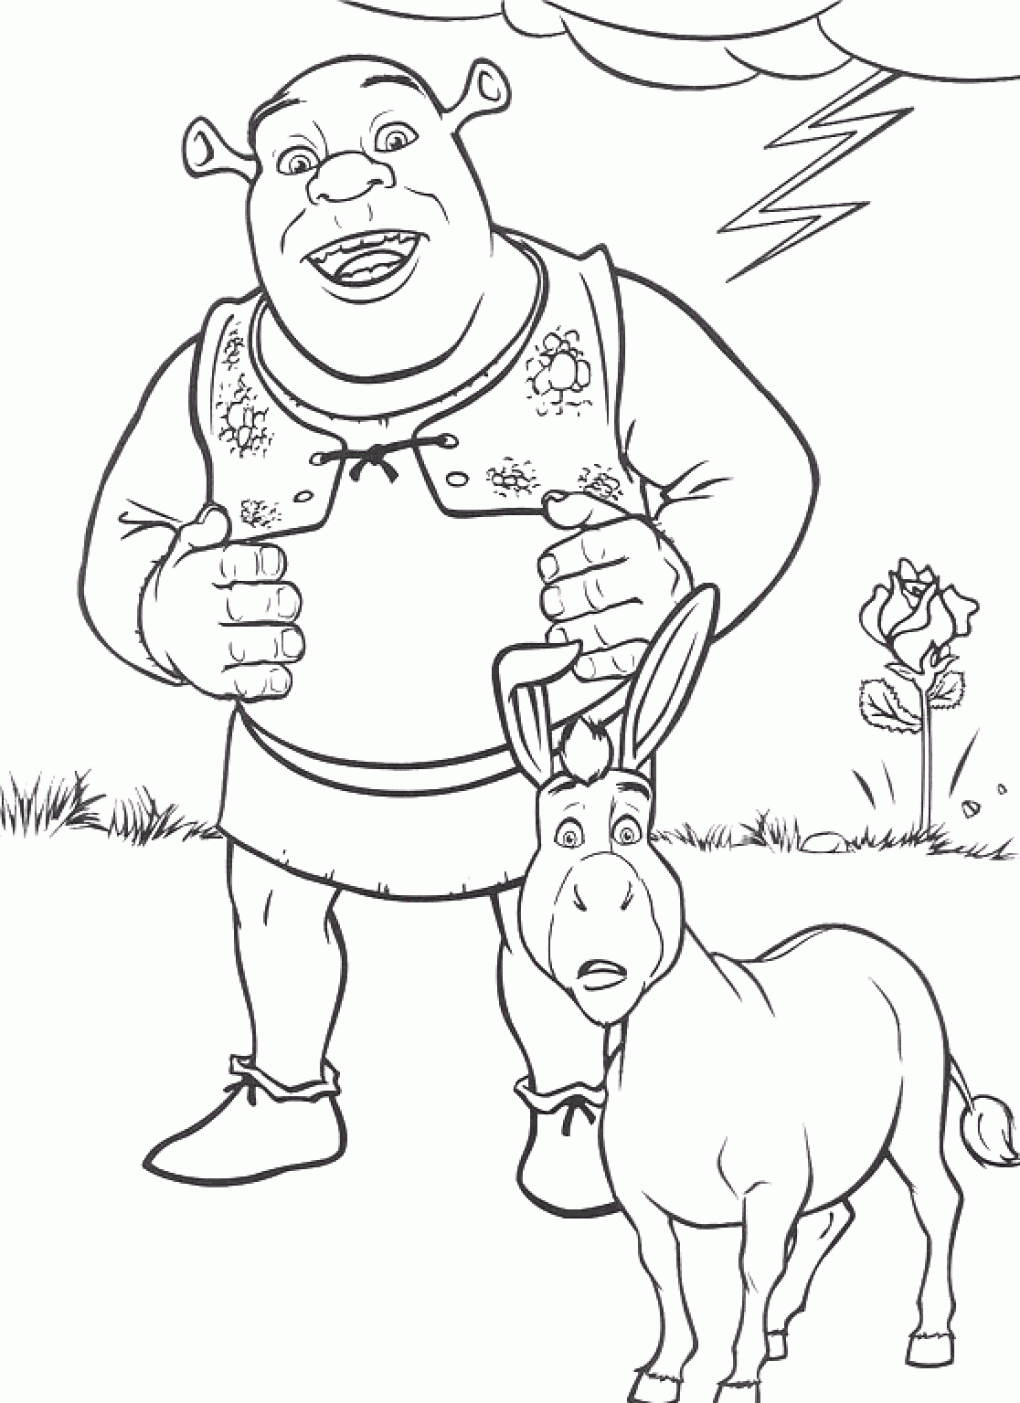 Outro belo desenho colorido de Shrek e o burro